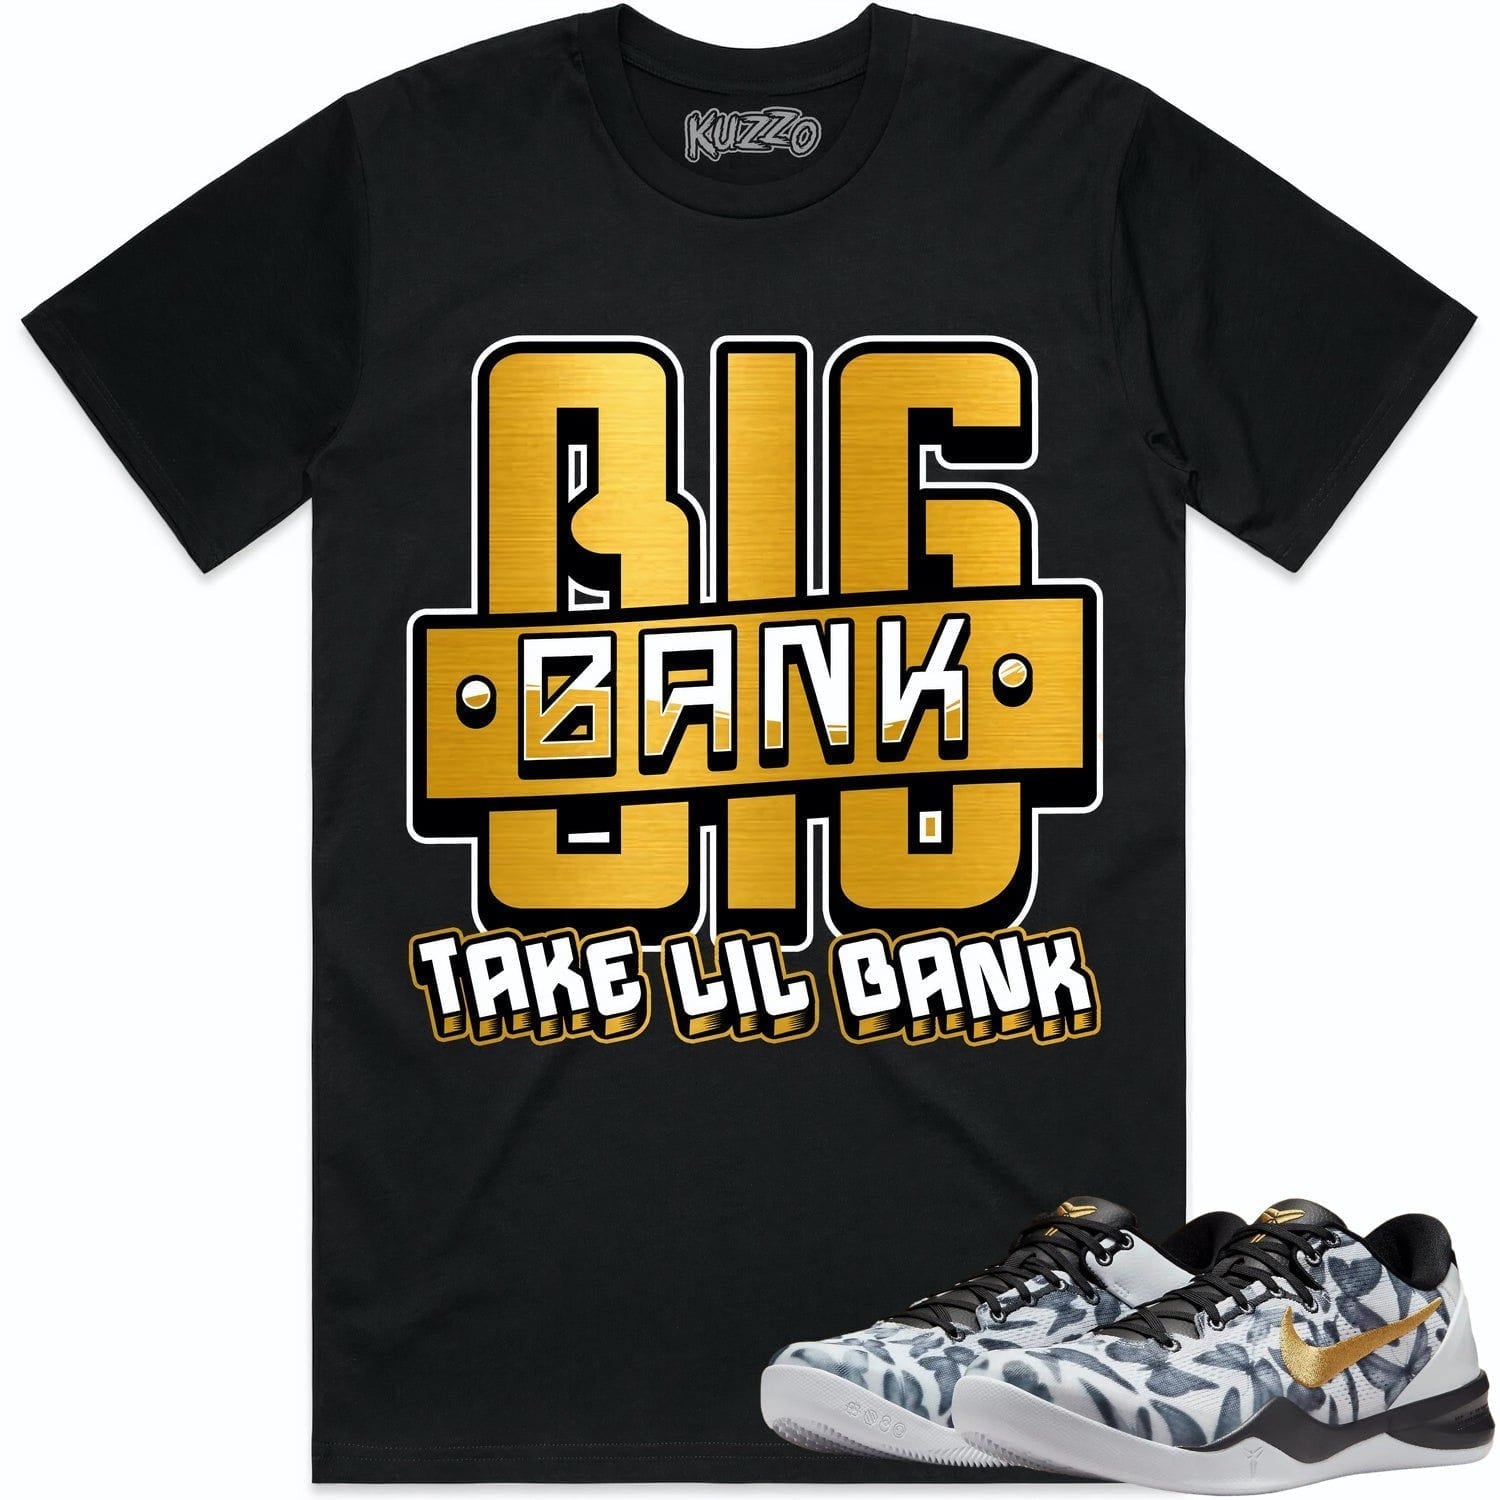 Mambacita 8ss Shirt - Kobe 8 Mambacita Gigi Shirts - Big Bank